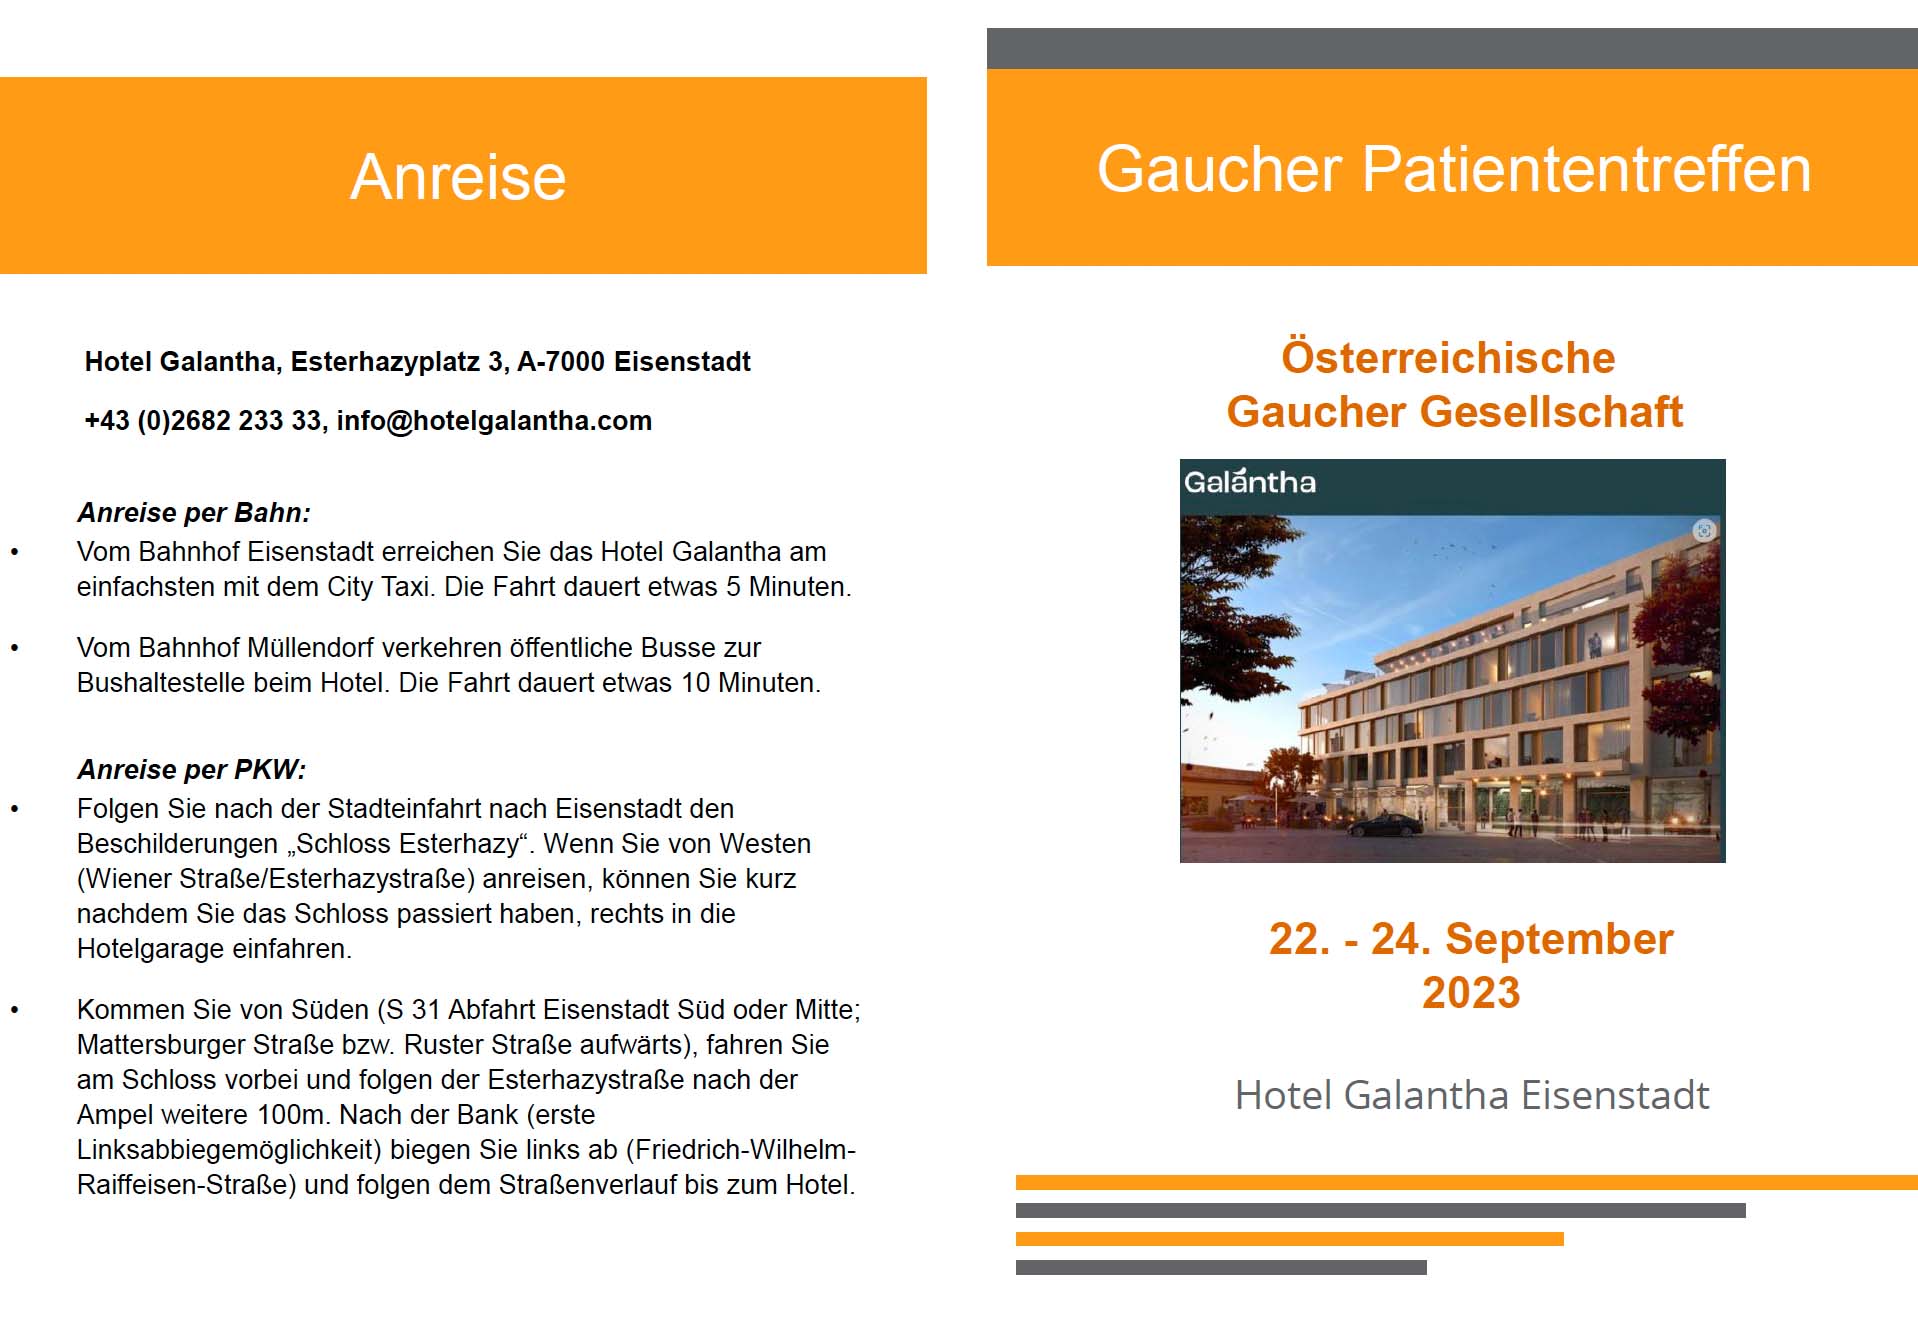 Morbus Gaucher Patiententreffen 2023 in Eisenstadt